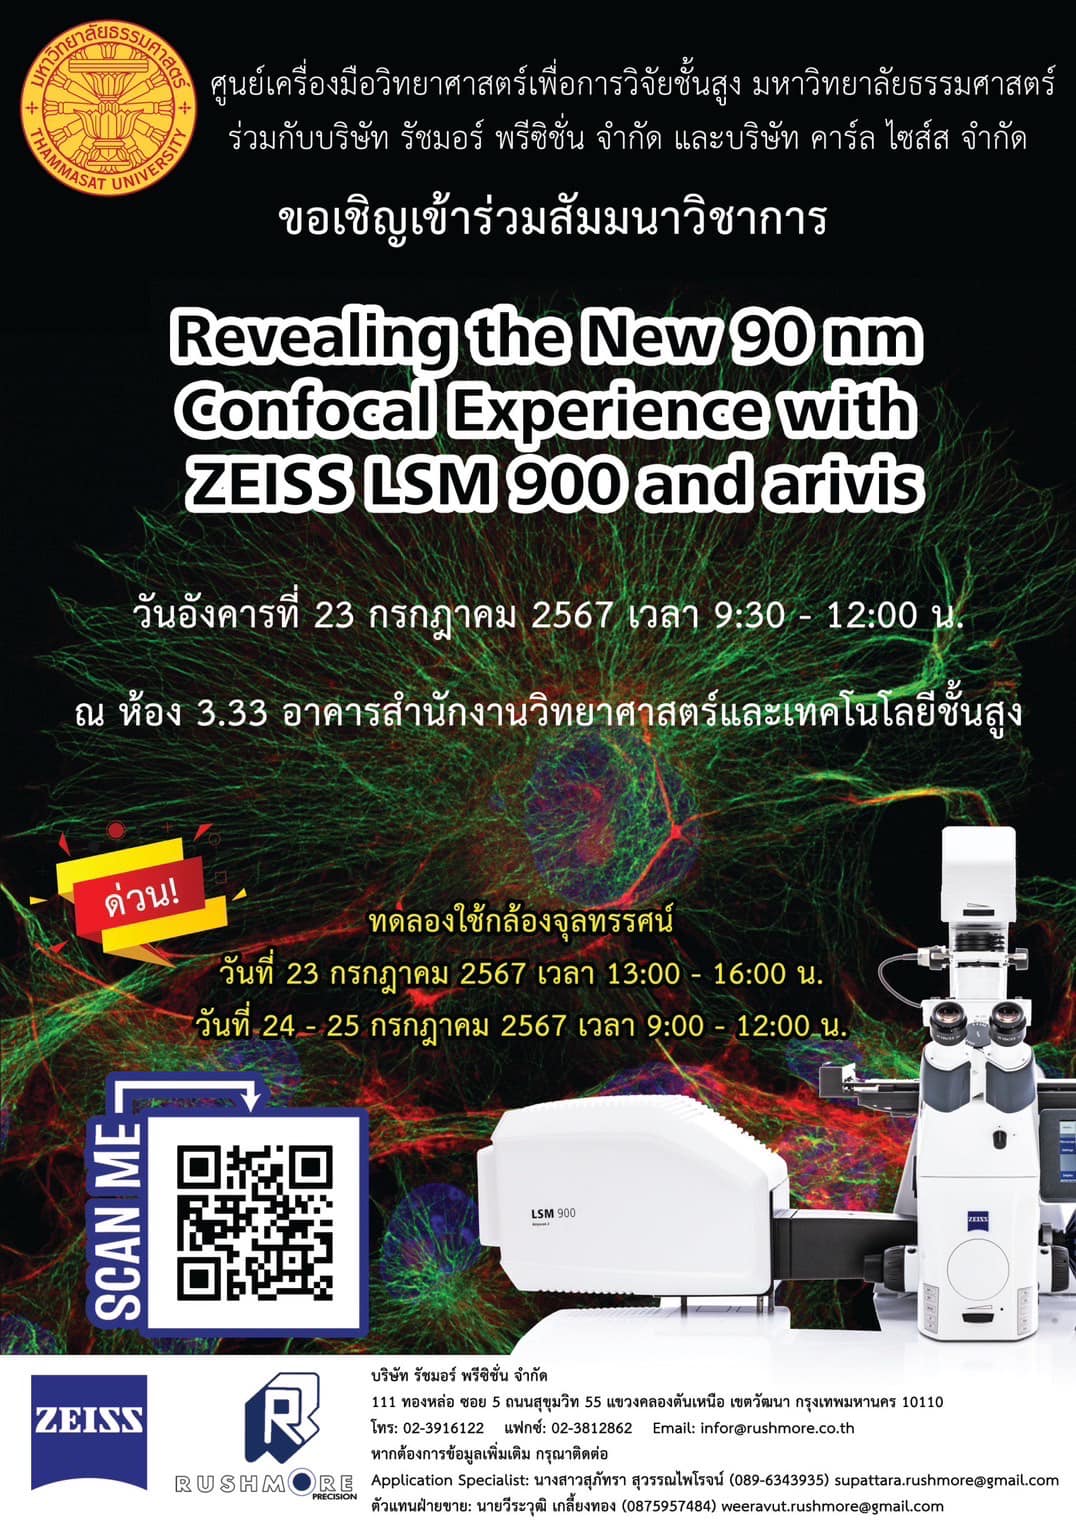 ศูนย์เครื่องมือฯ ม.ธรรมศาสตร์ขอเชิญผู้สนใจเข้าร่วมสัมมนา เรื่อง Revealing the New 90 nm Confocal Experience with ZEISS LSM 900 and arivis